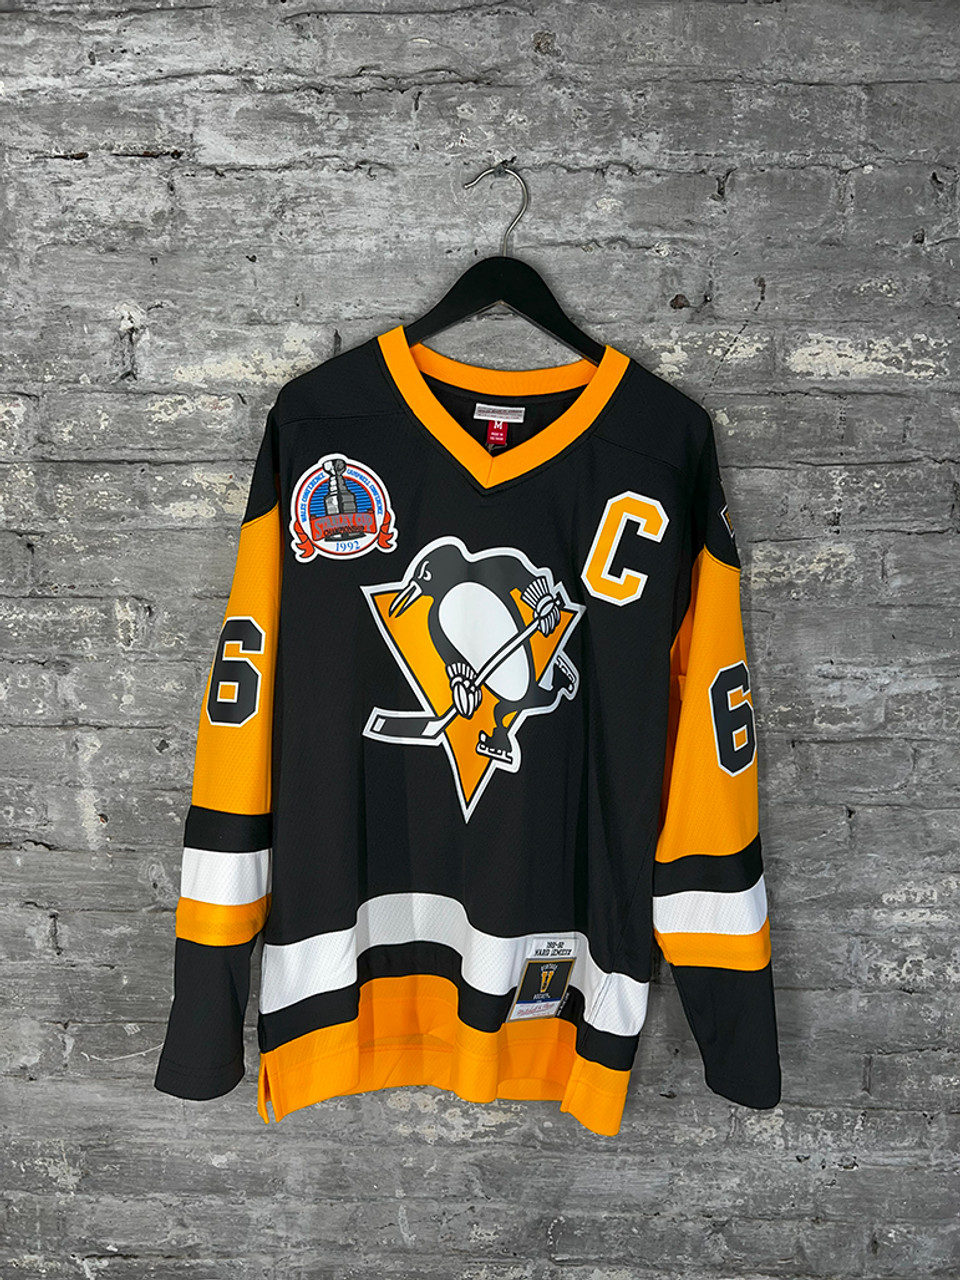 NHL - Tops & T-shirts, Jerseys